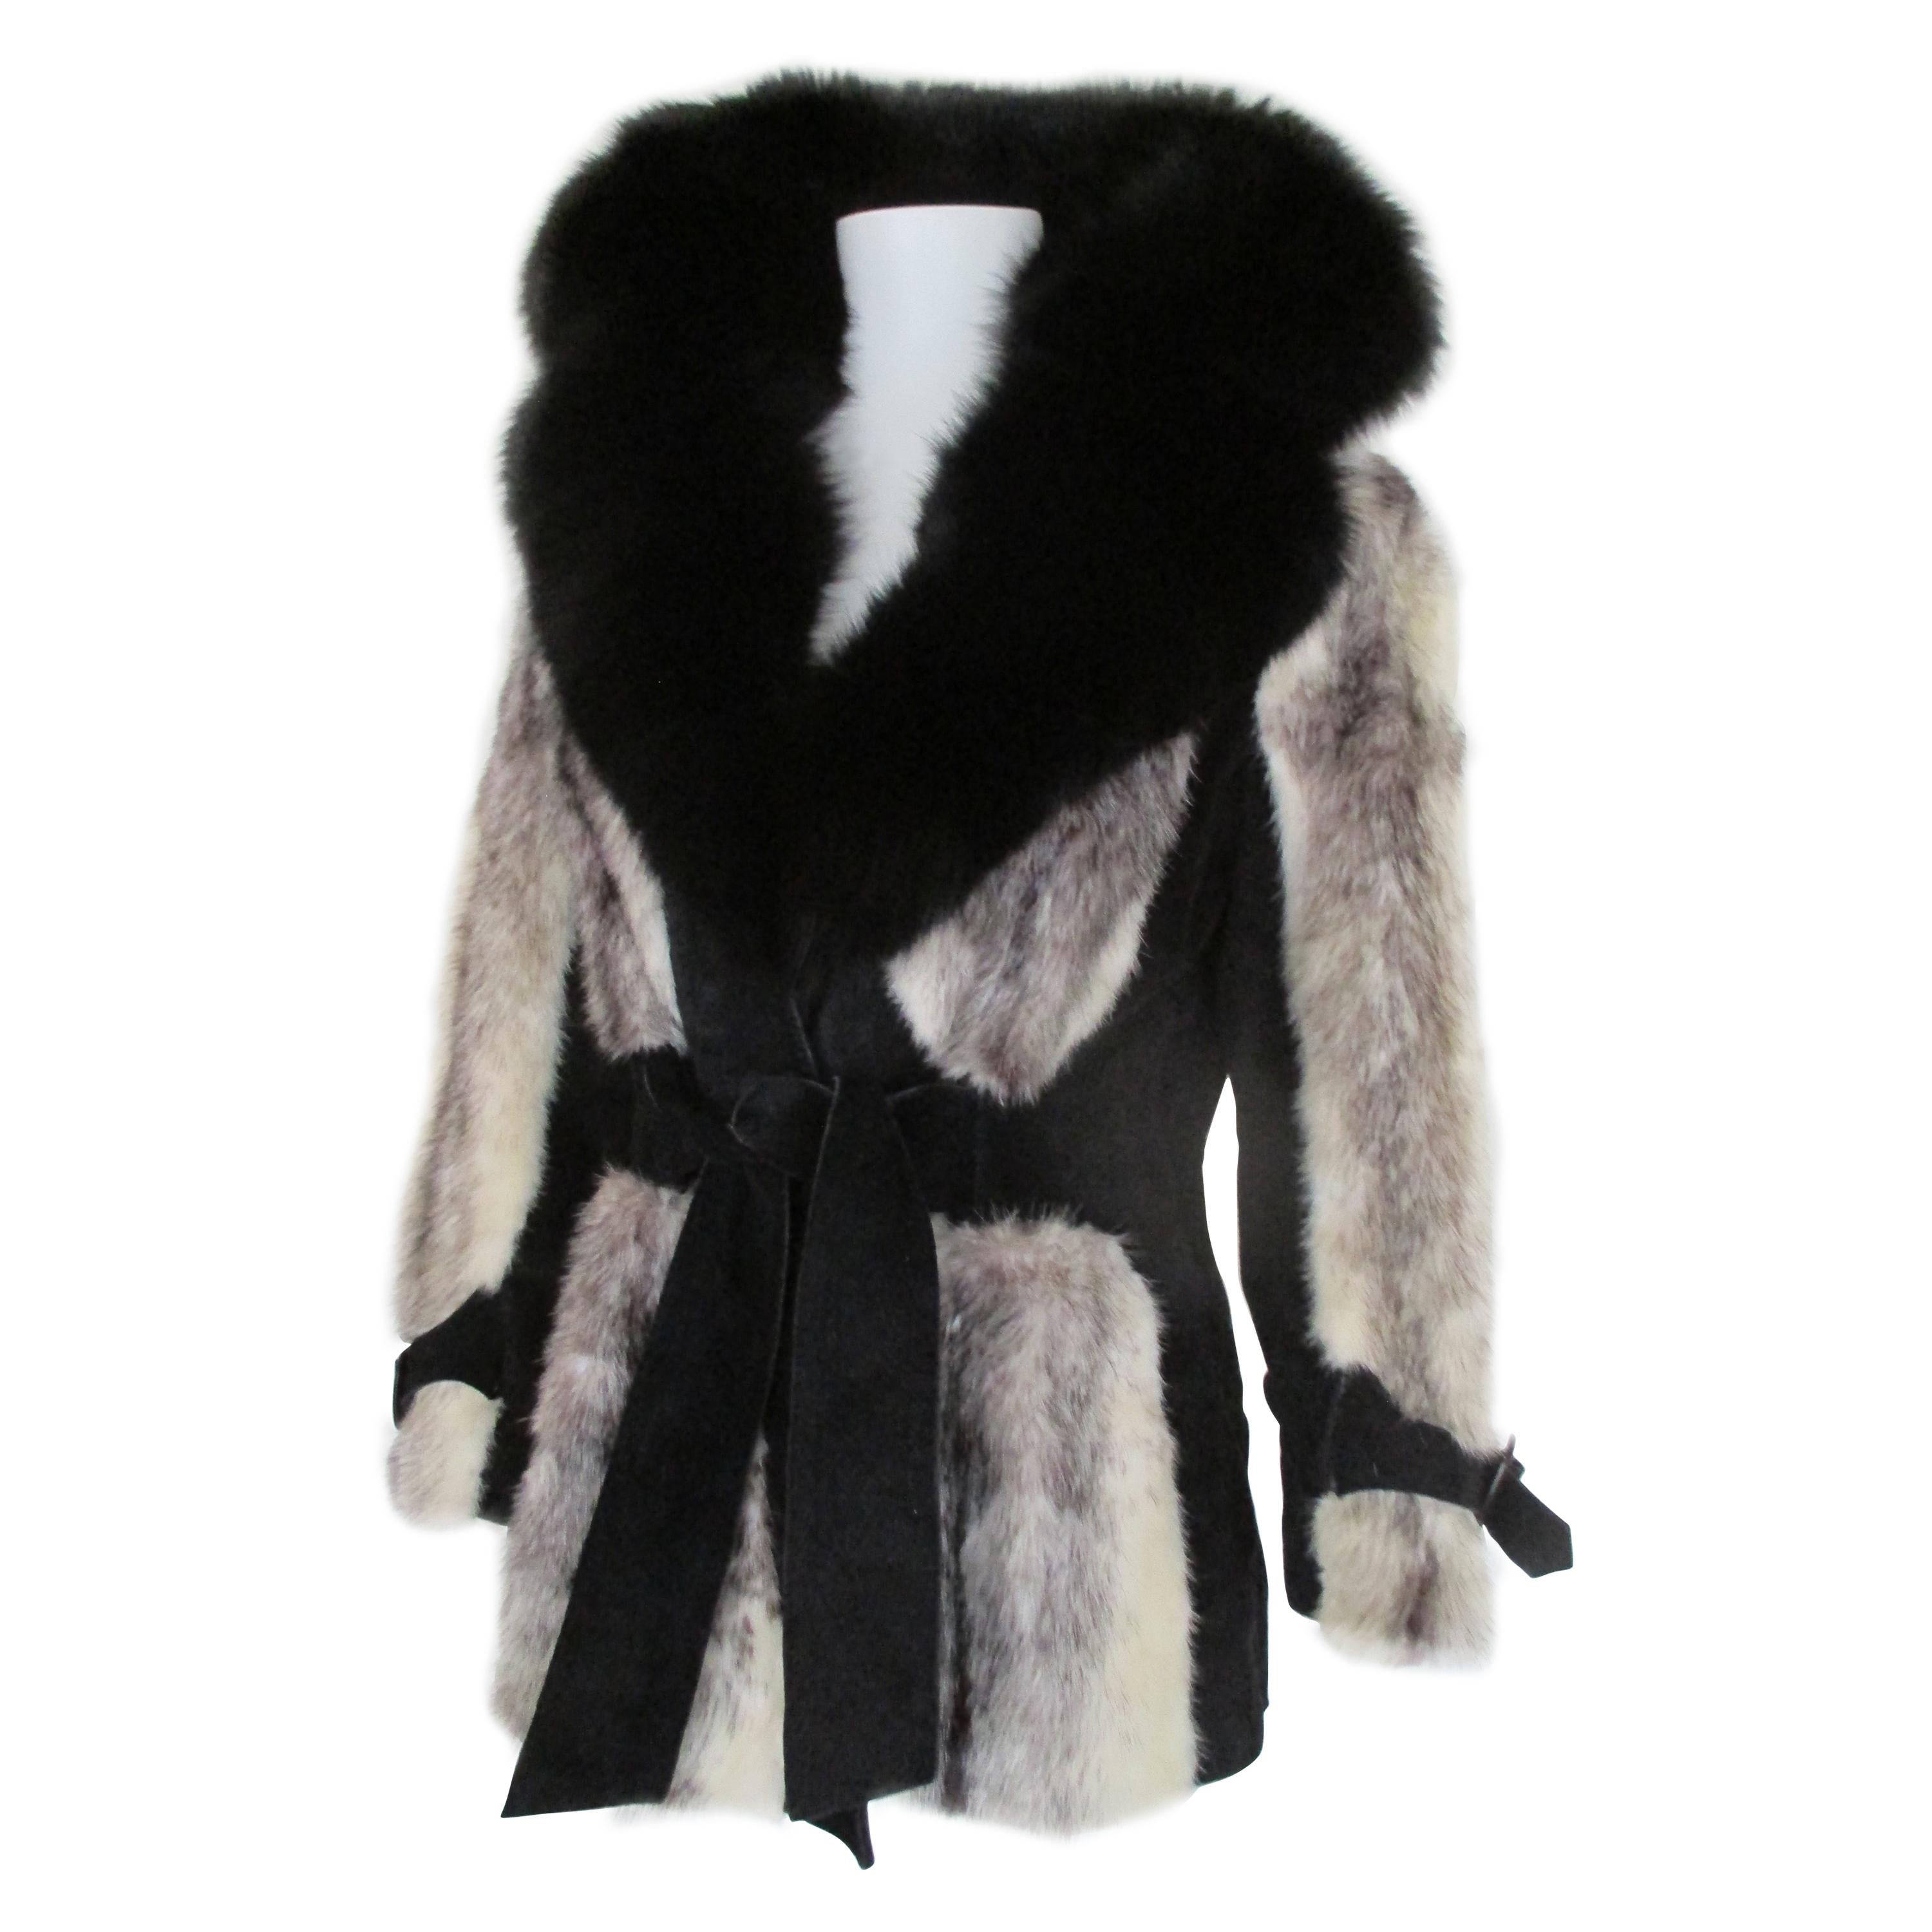 Exclusive Kohinoor Cross Mink Fur Coat For Sale